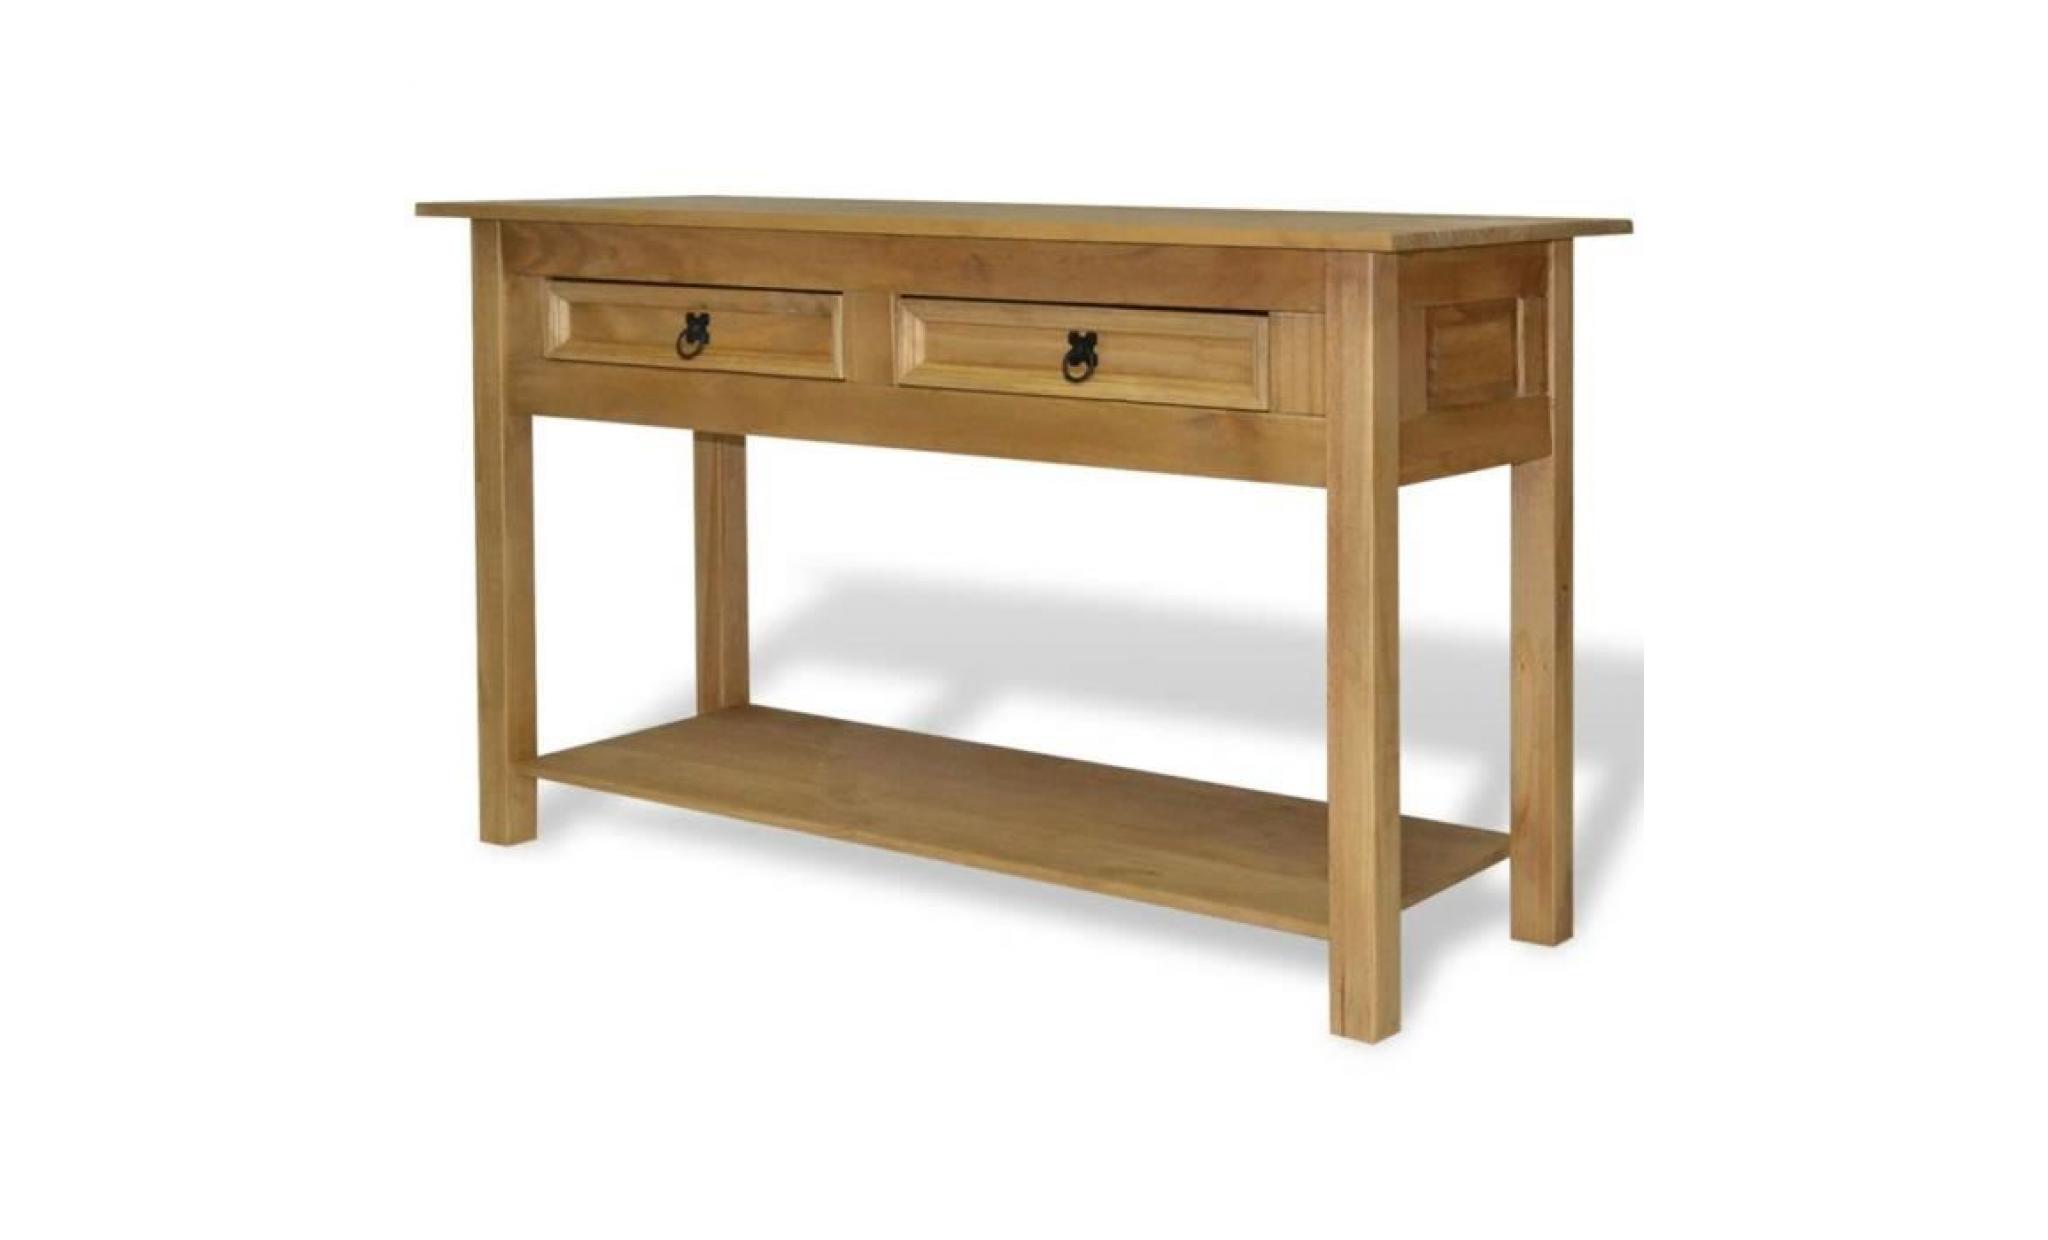 table console en pin avec tiroir style corona 90 x 34,5 x 73 cm pas cher